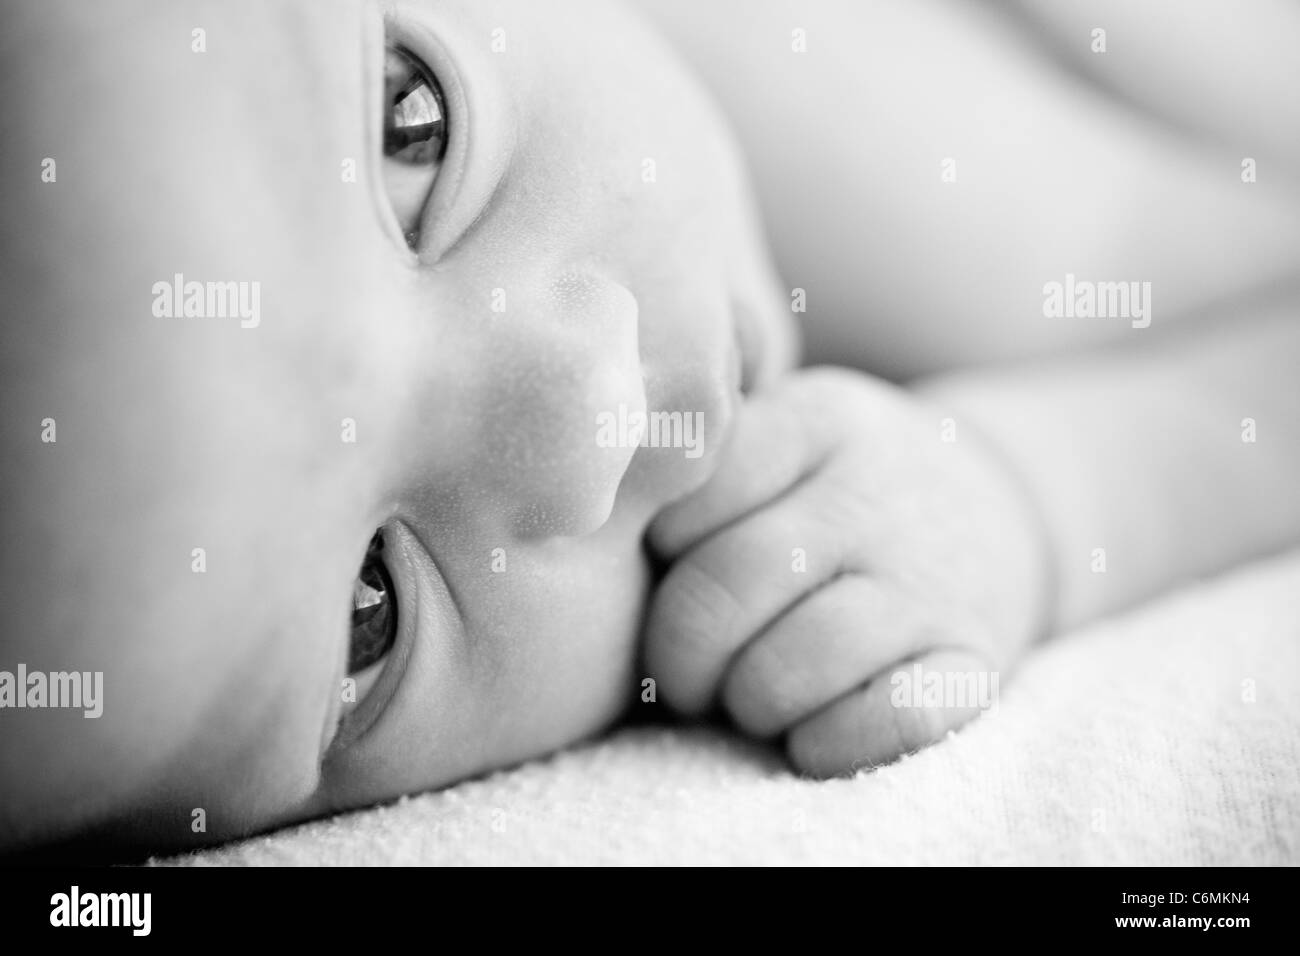 newborn baby in black and white Stock Photo